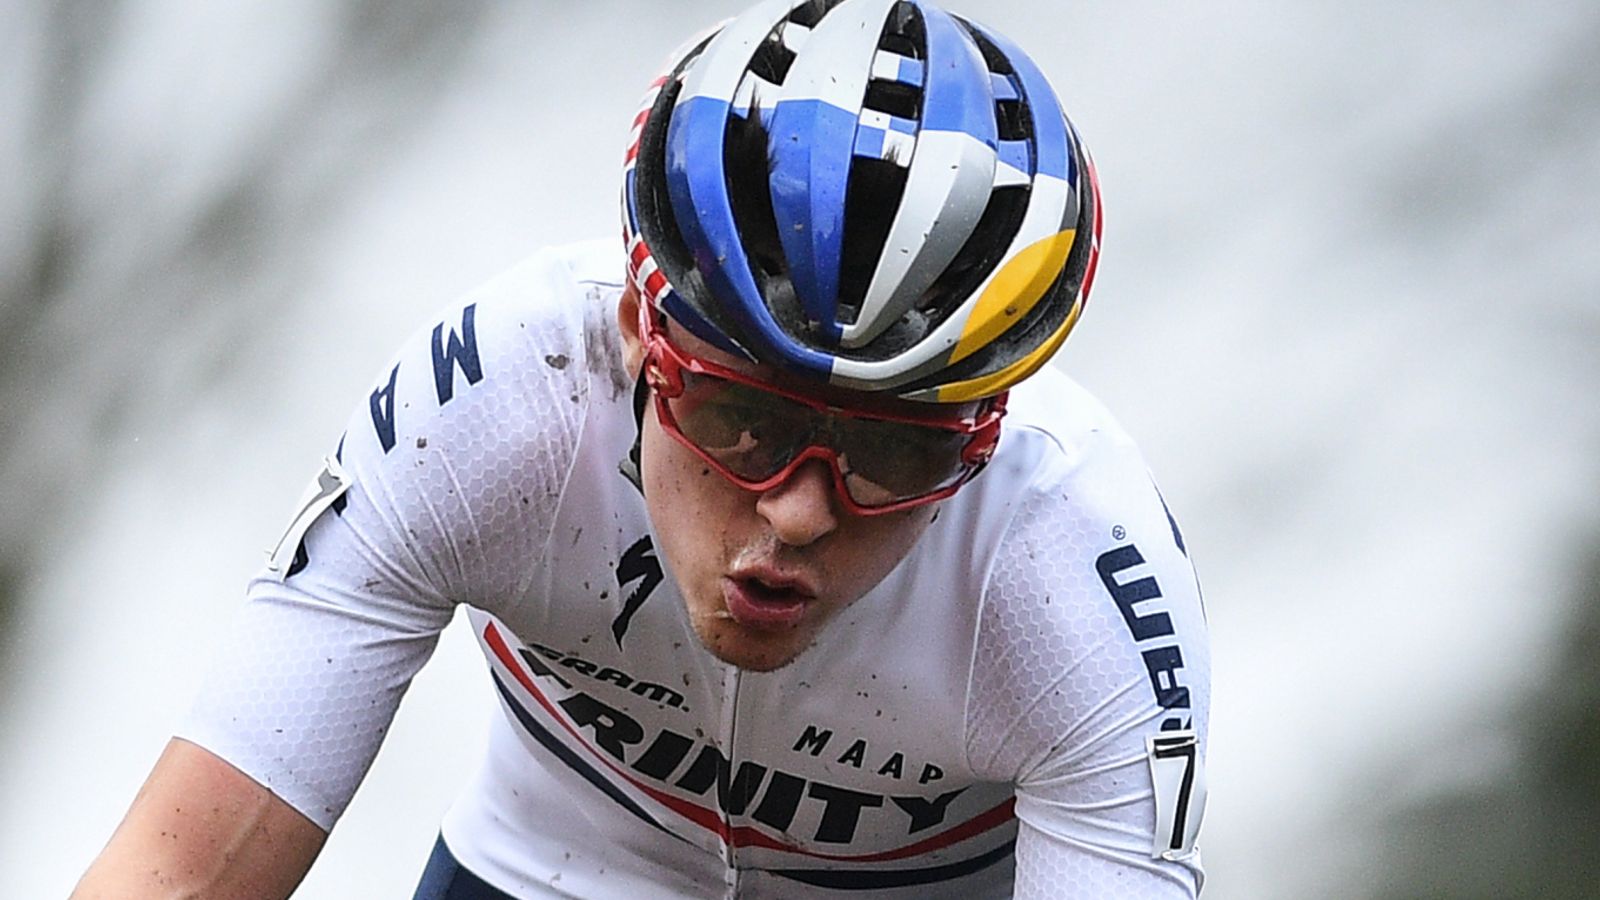 Le Britannique Tom Pidcock s’attend à des descentes plus prudentes sur le Tour de France après la mort de Gino Mader |  Nouvelles du cyclisme